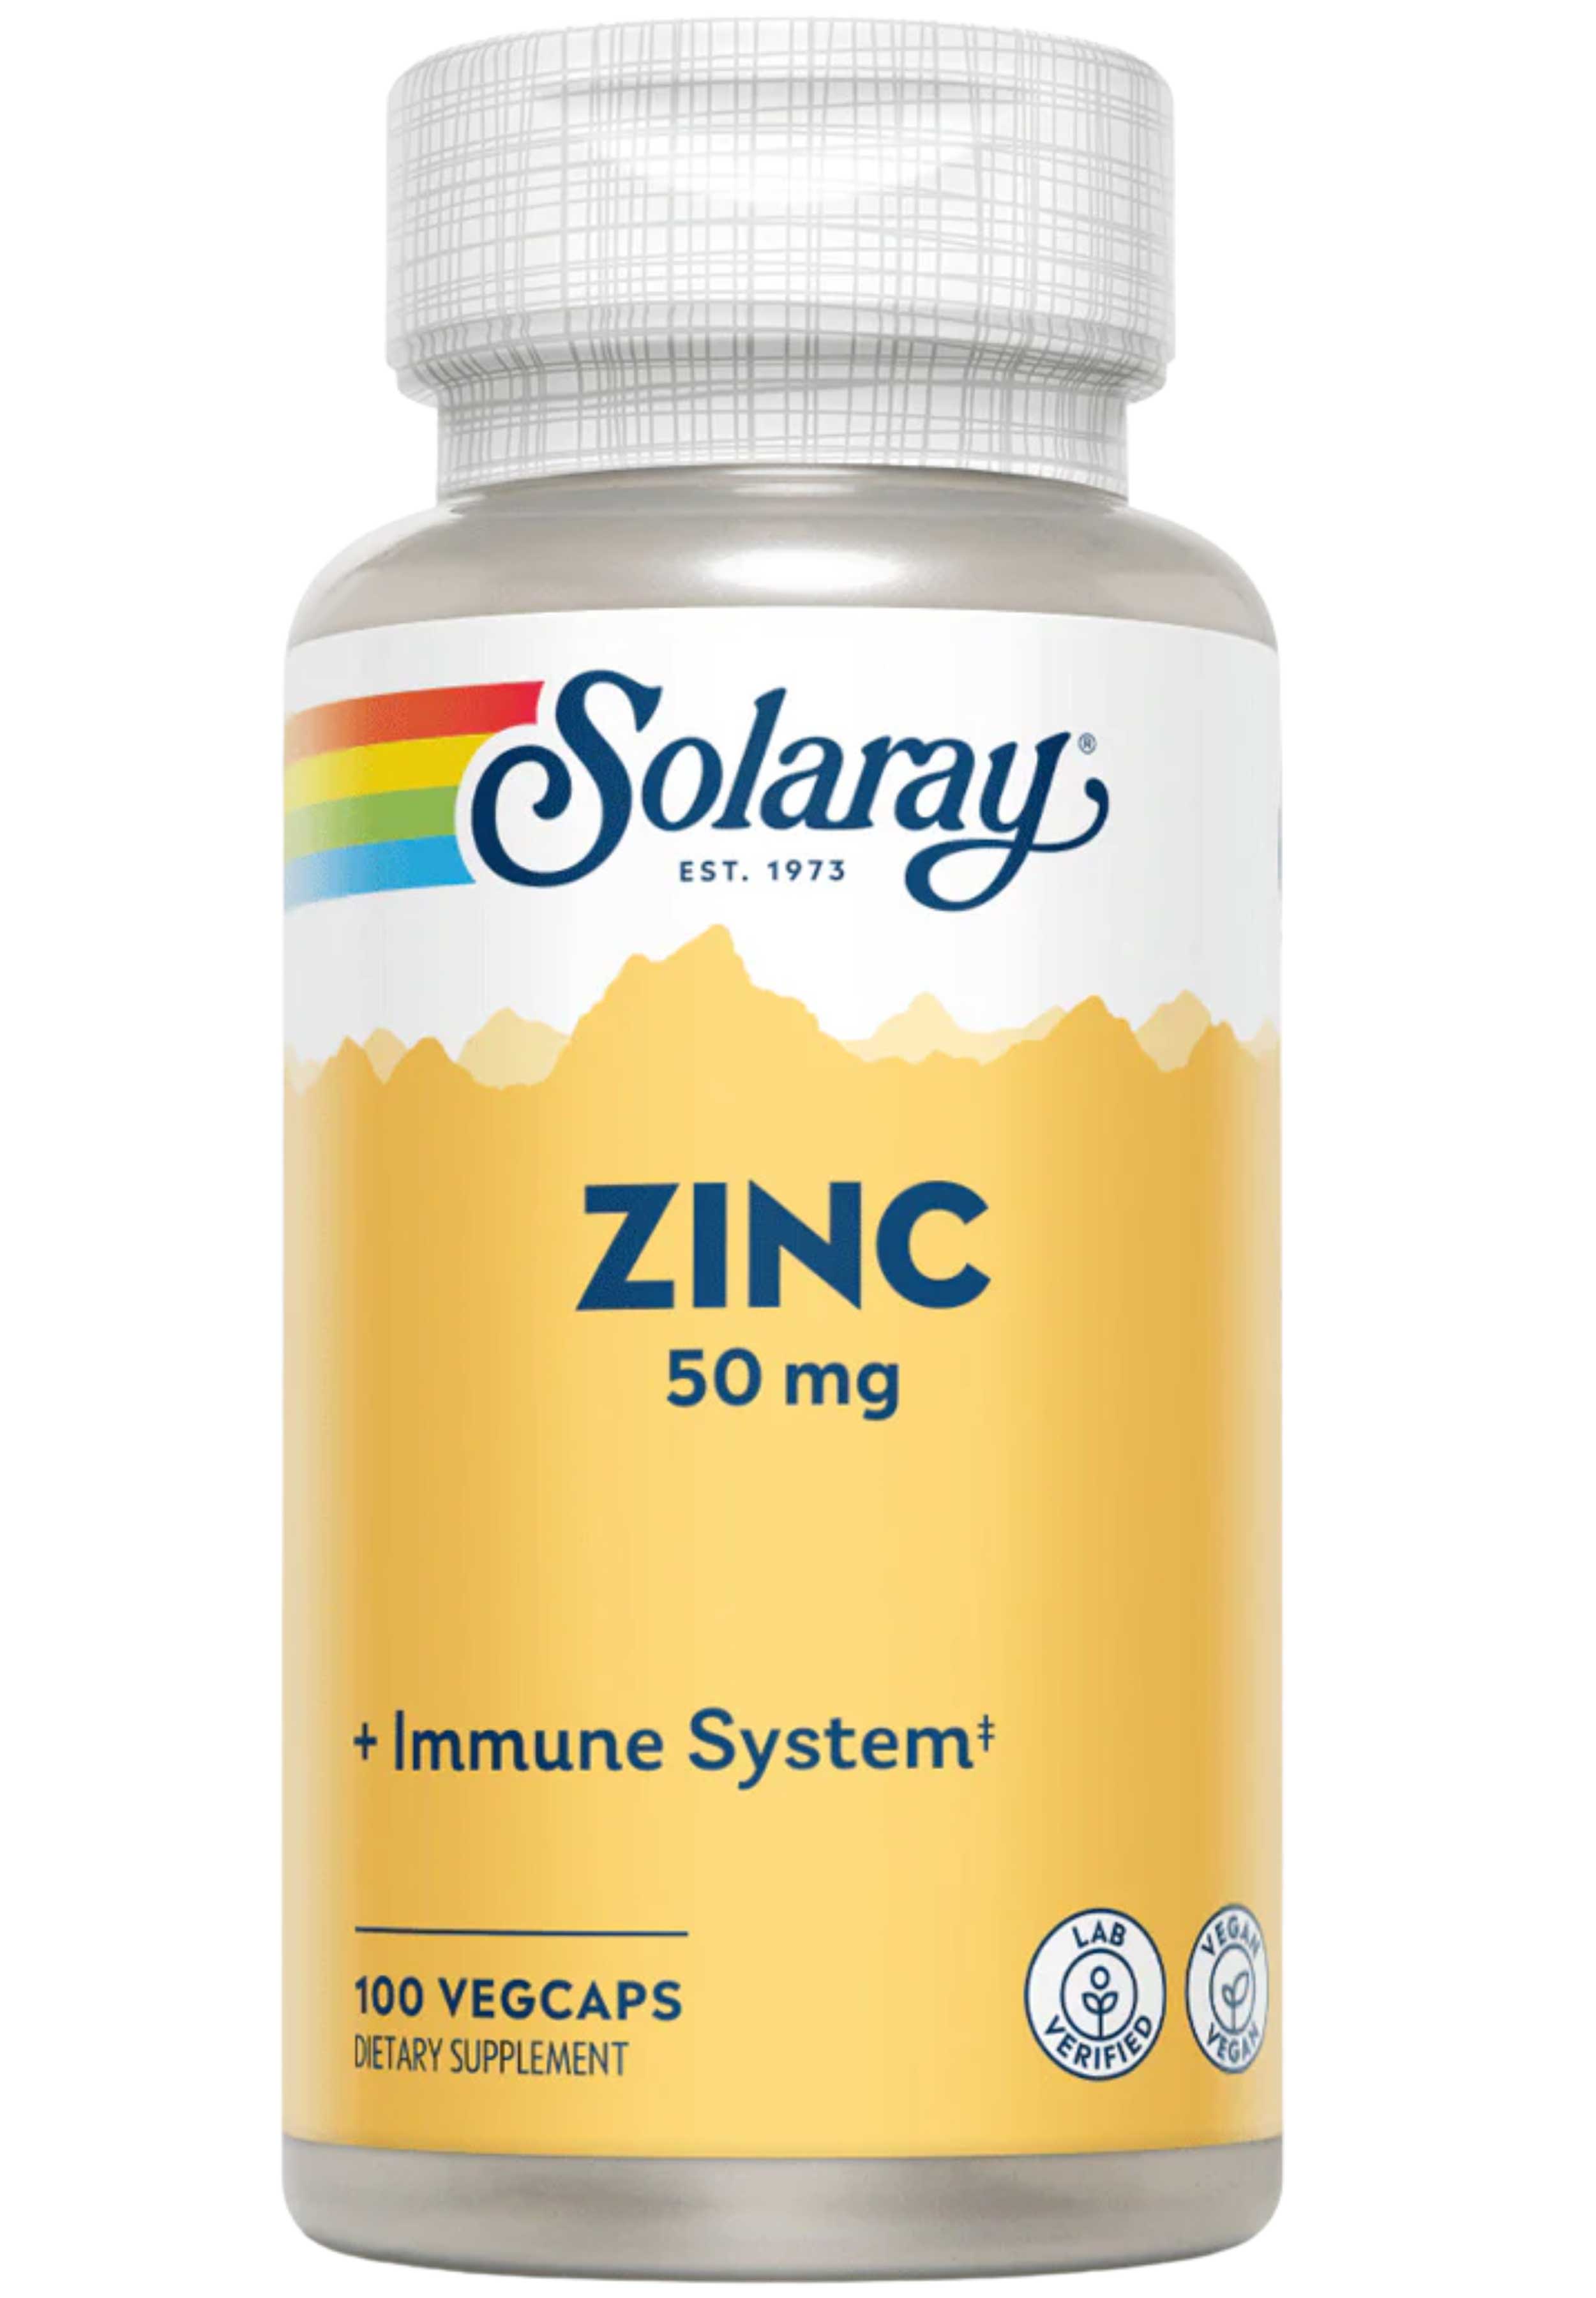 Solaray Zinc 50